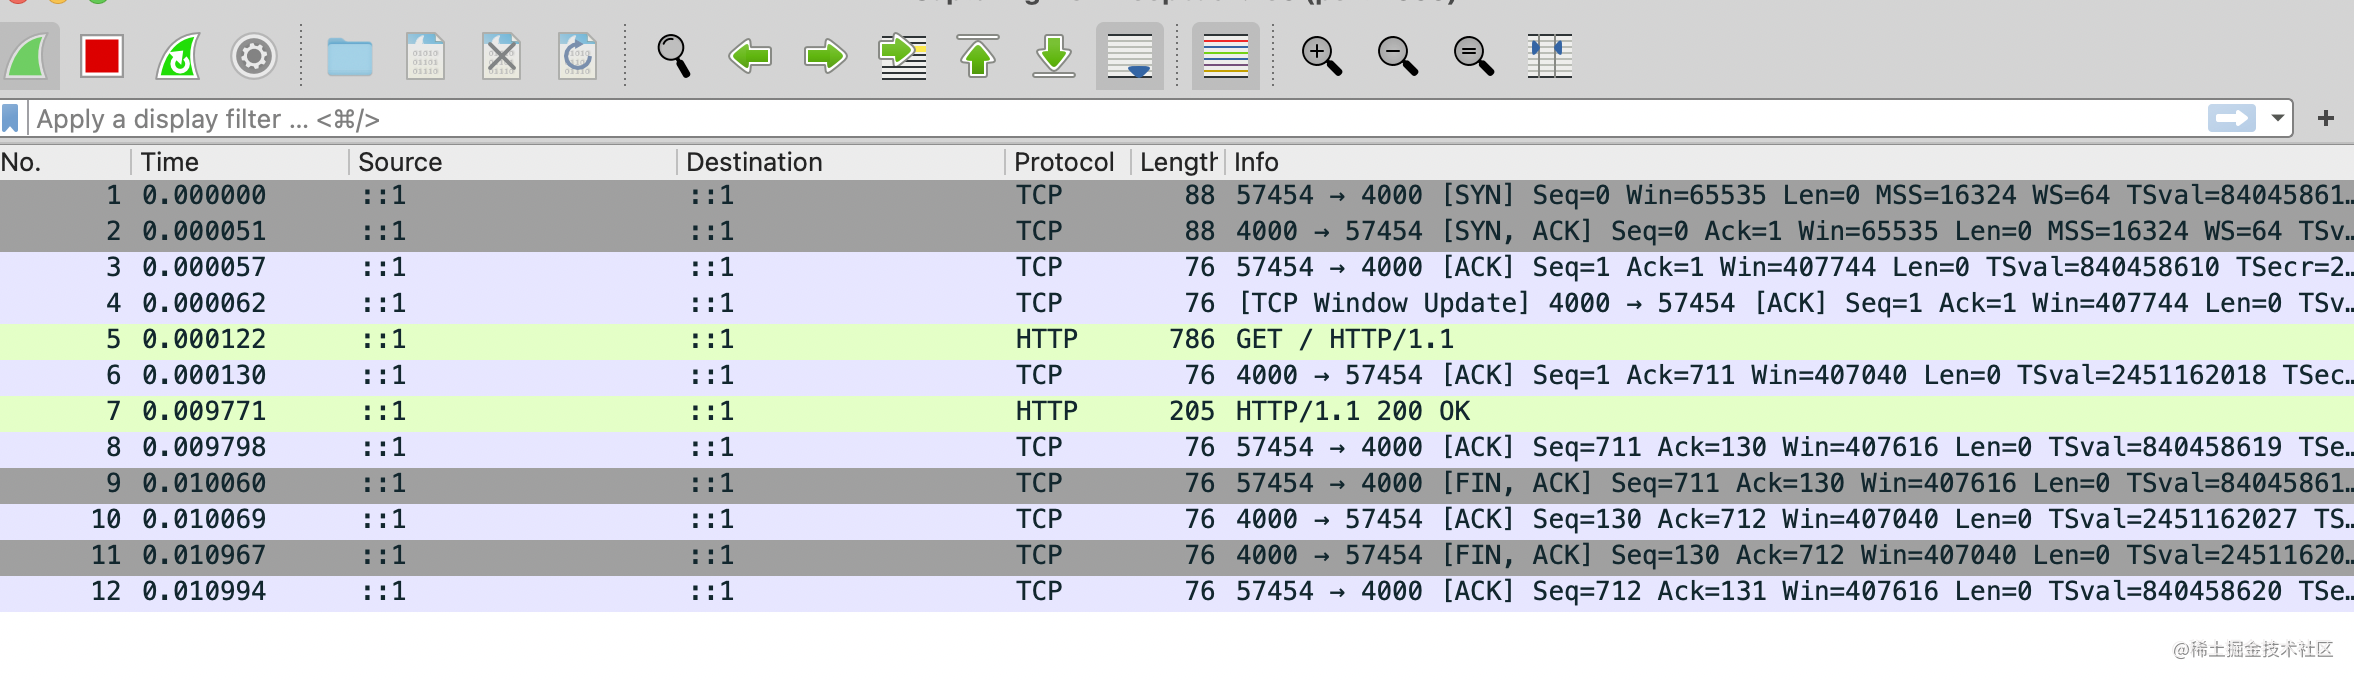 理清 HTTP 下的 TCP 流程，让你的 HTTP 水平更上一层